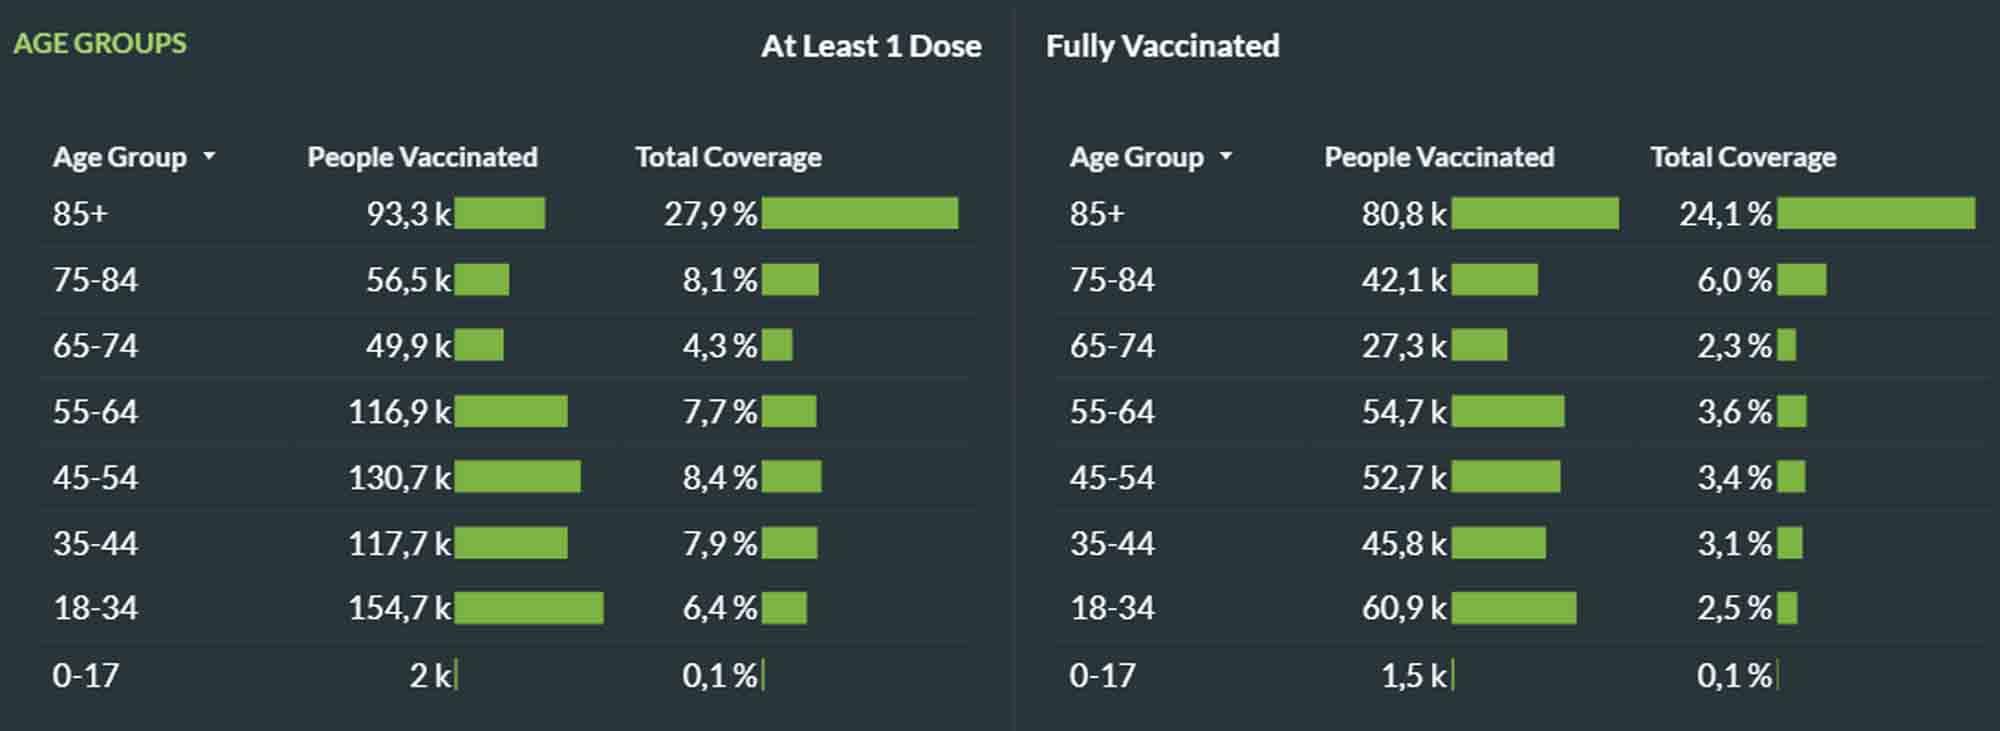 Plus d'un million de doses administrées: le point sur la vaccination en Belgique (infographie)